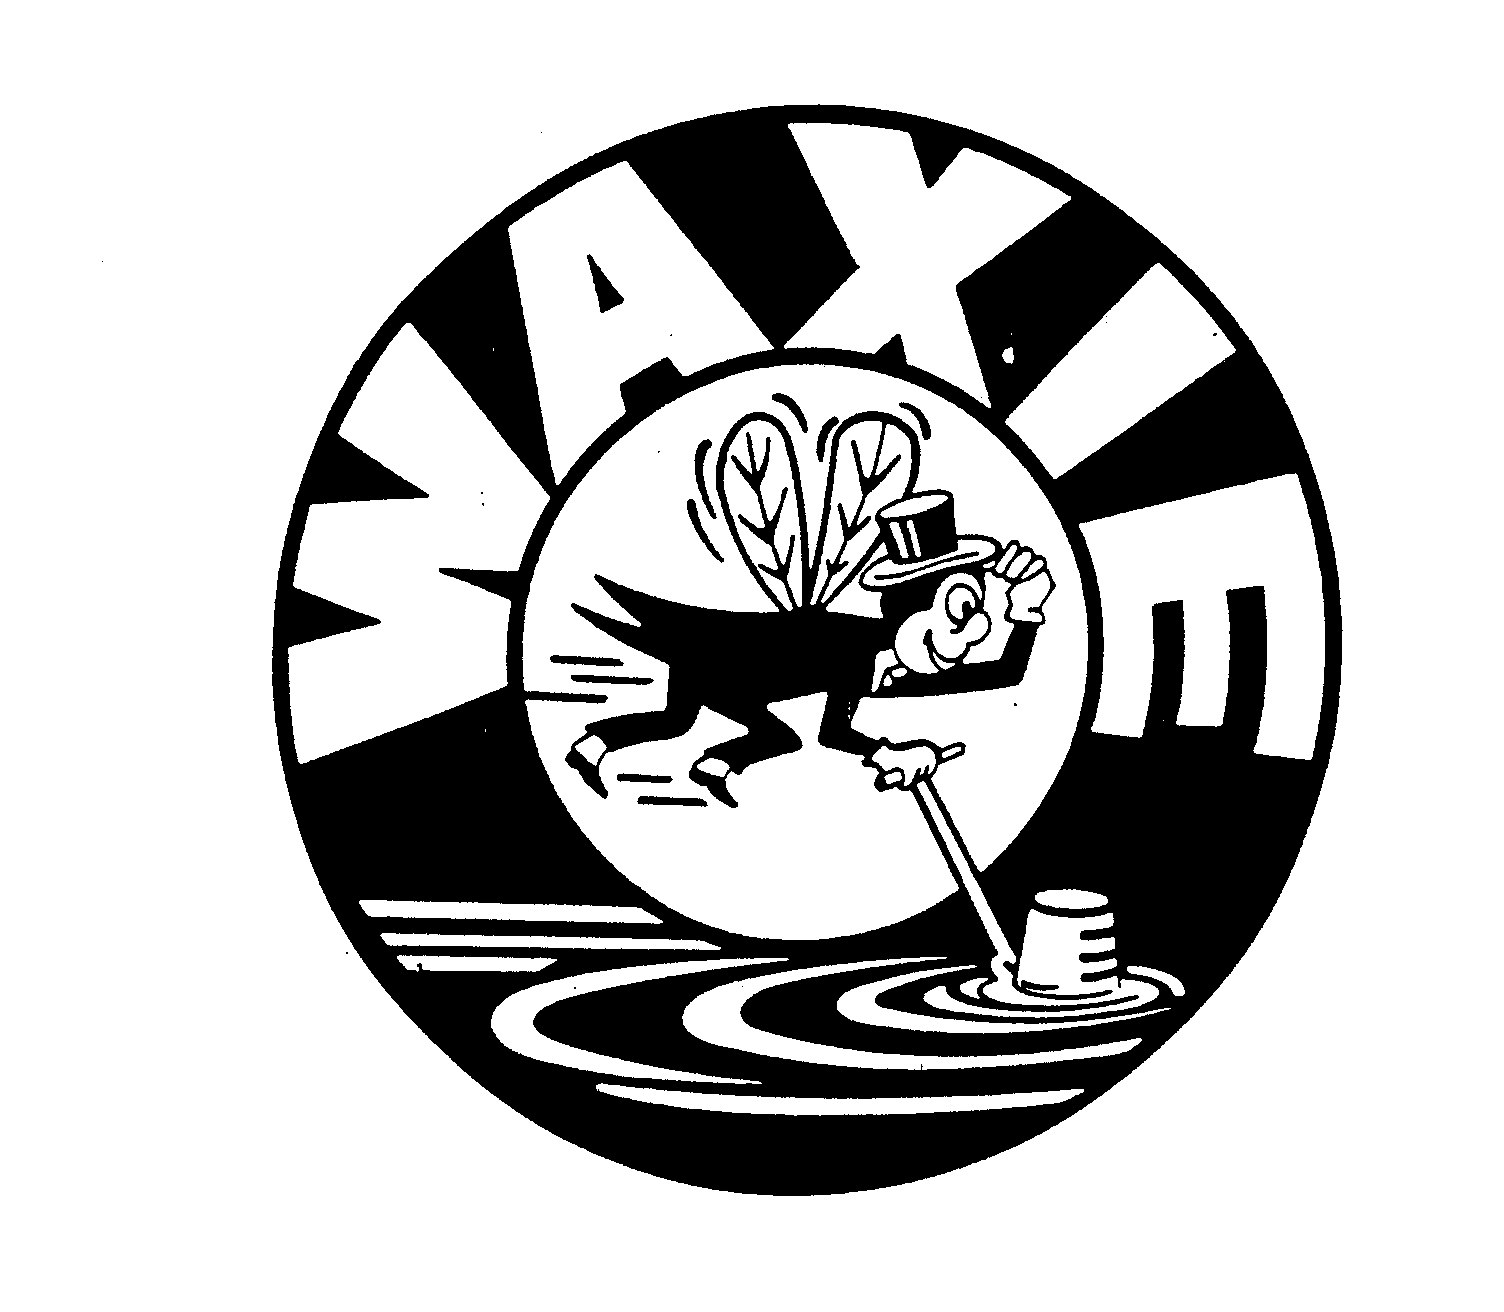 Trademark Logo WAXIE